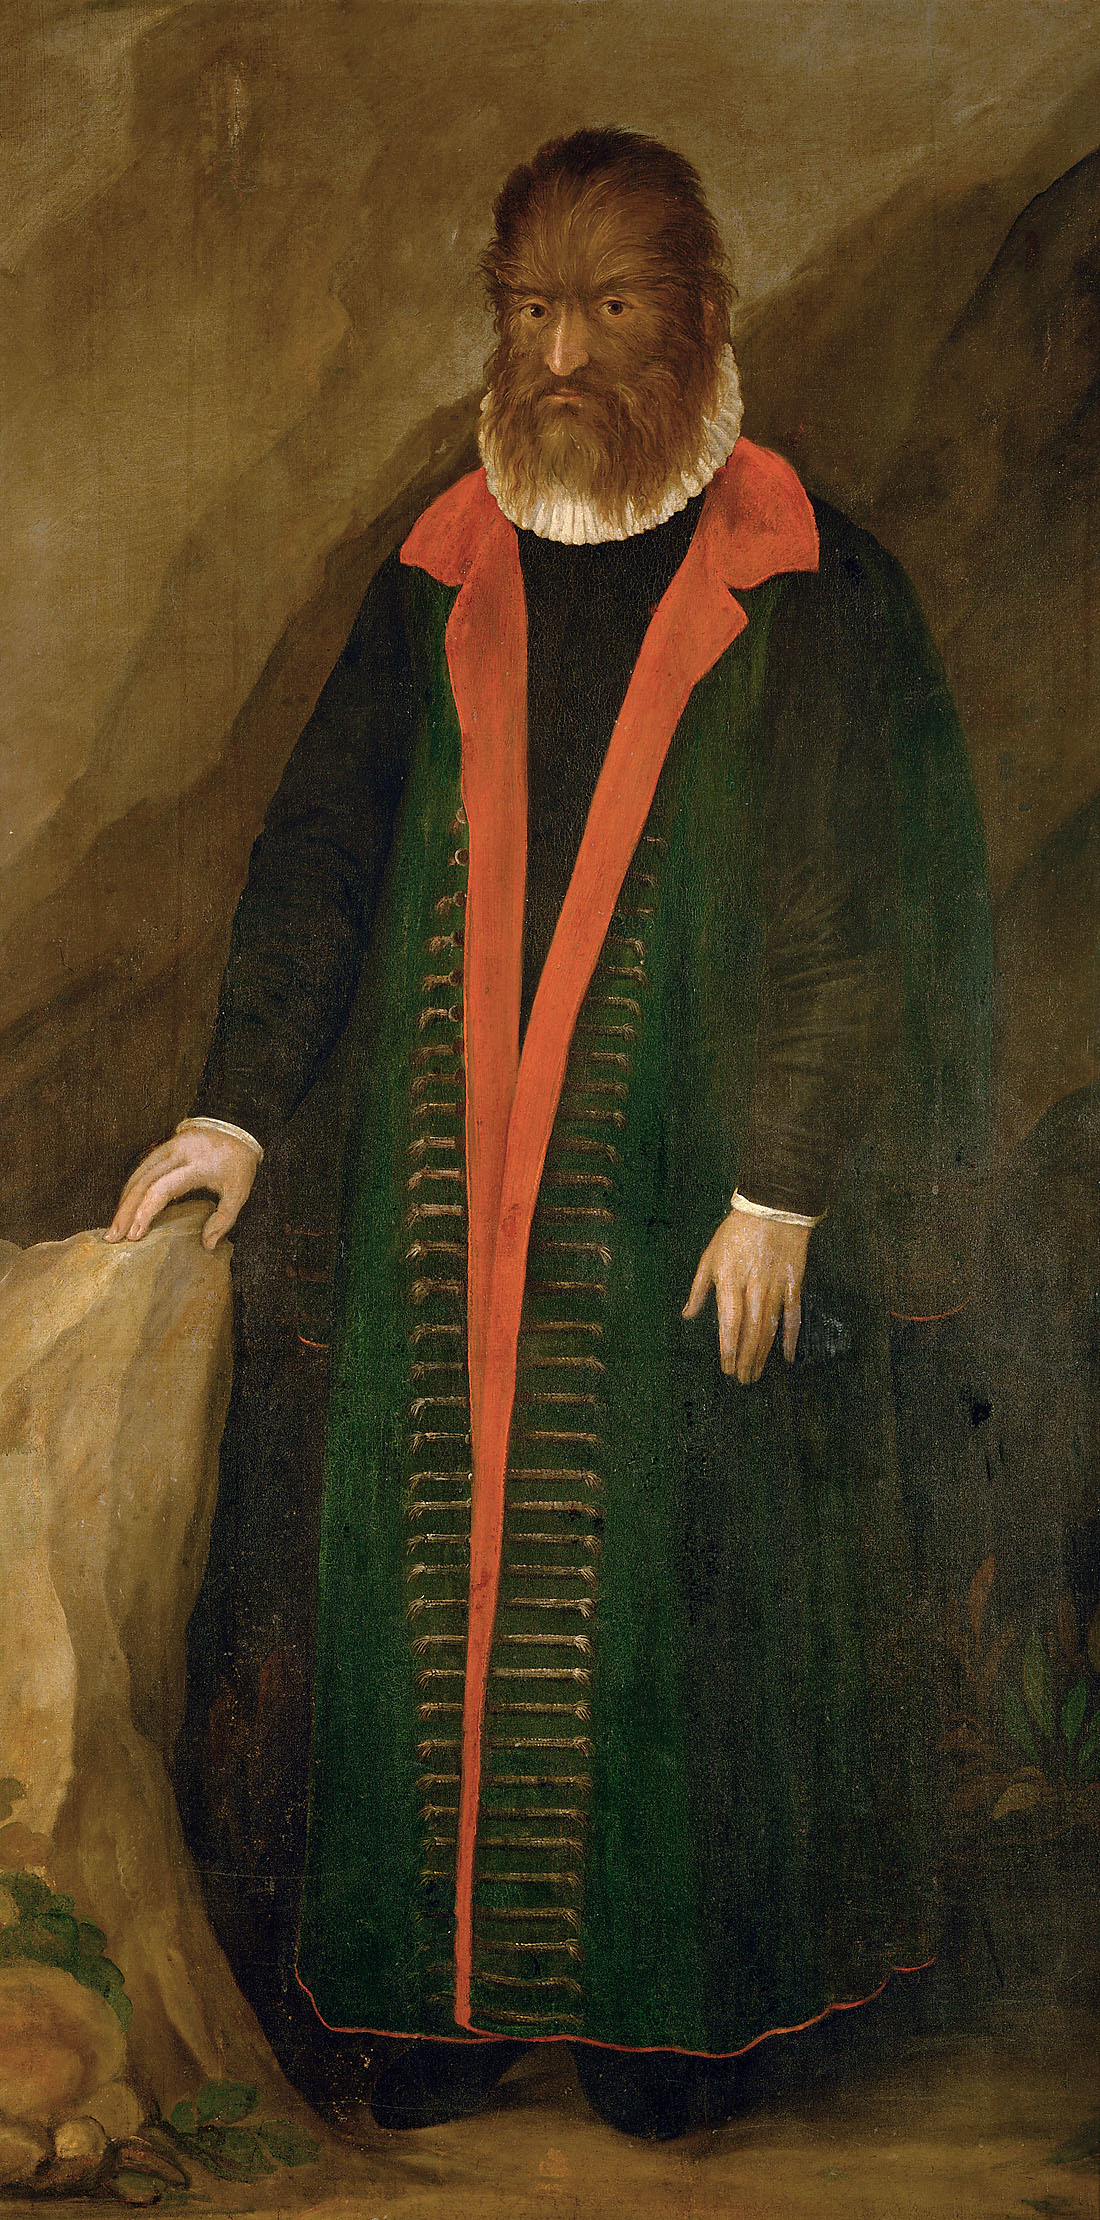 Chlupatý muž, Petrus Gonsalvus by Unknown Artist - 1580 